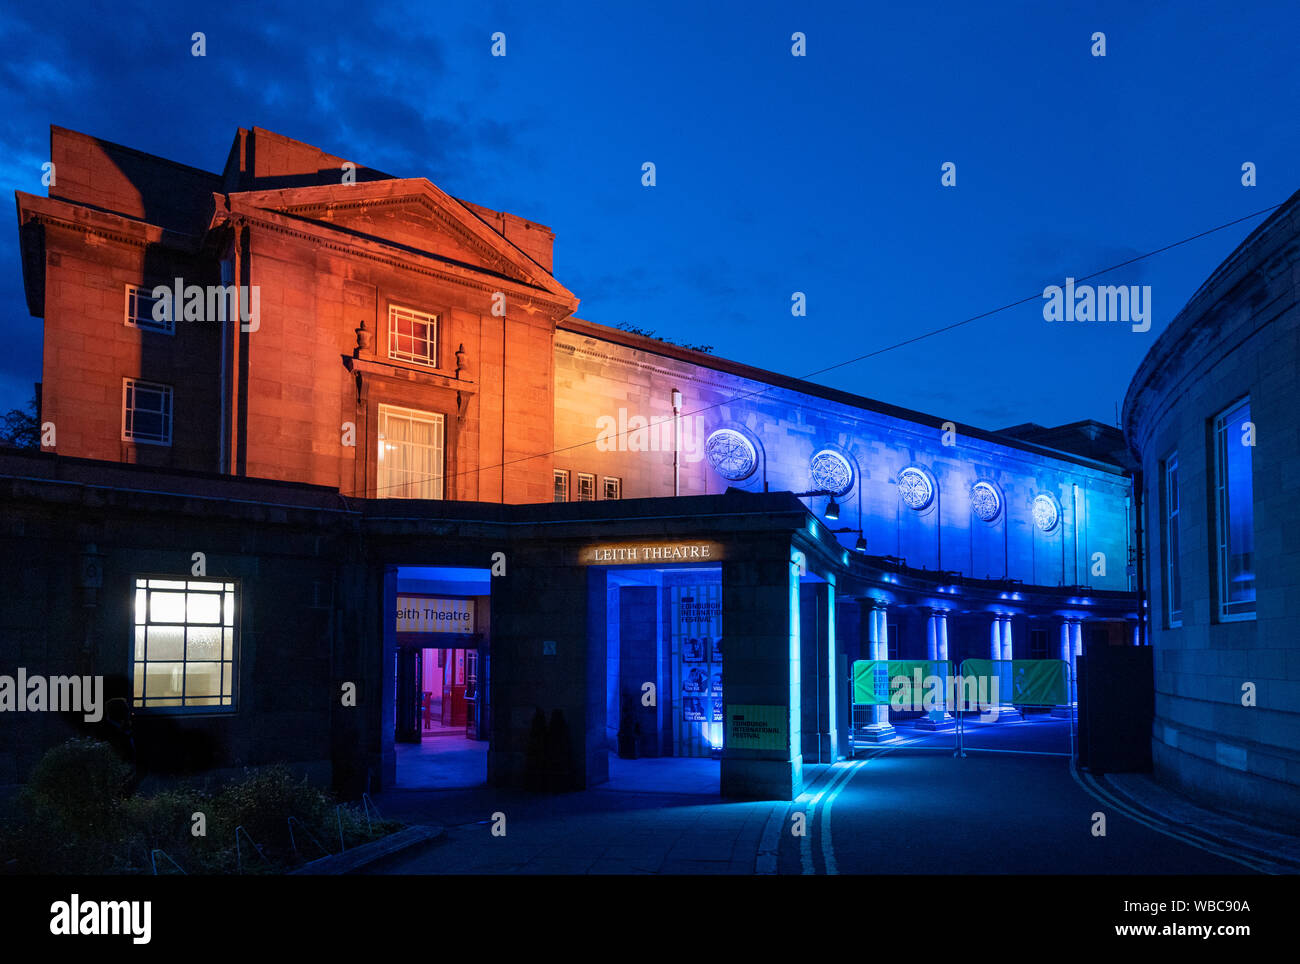 Nacht Blick von Außen von Leith Theater während Edinburgh International Festival 2019, Schottland, Großbritannien Stockfoto